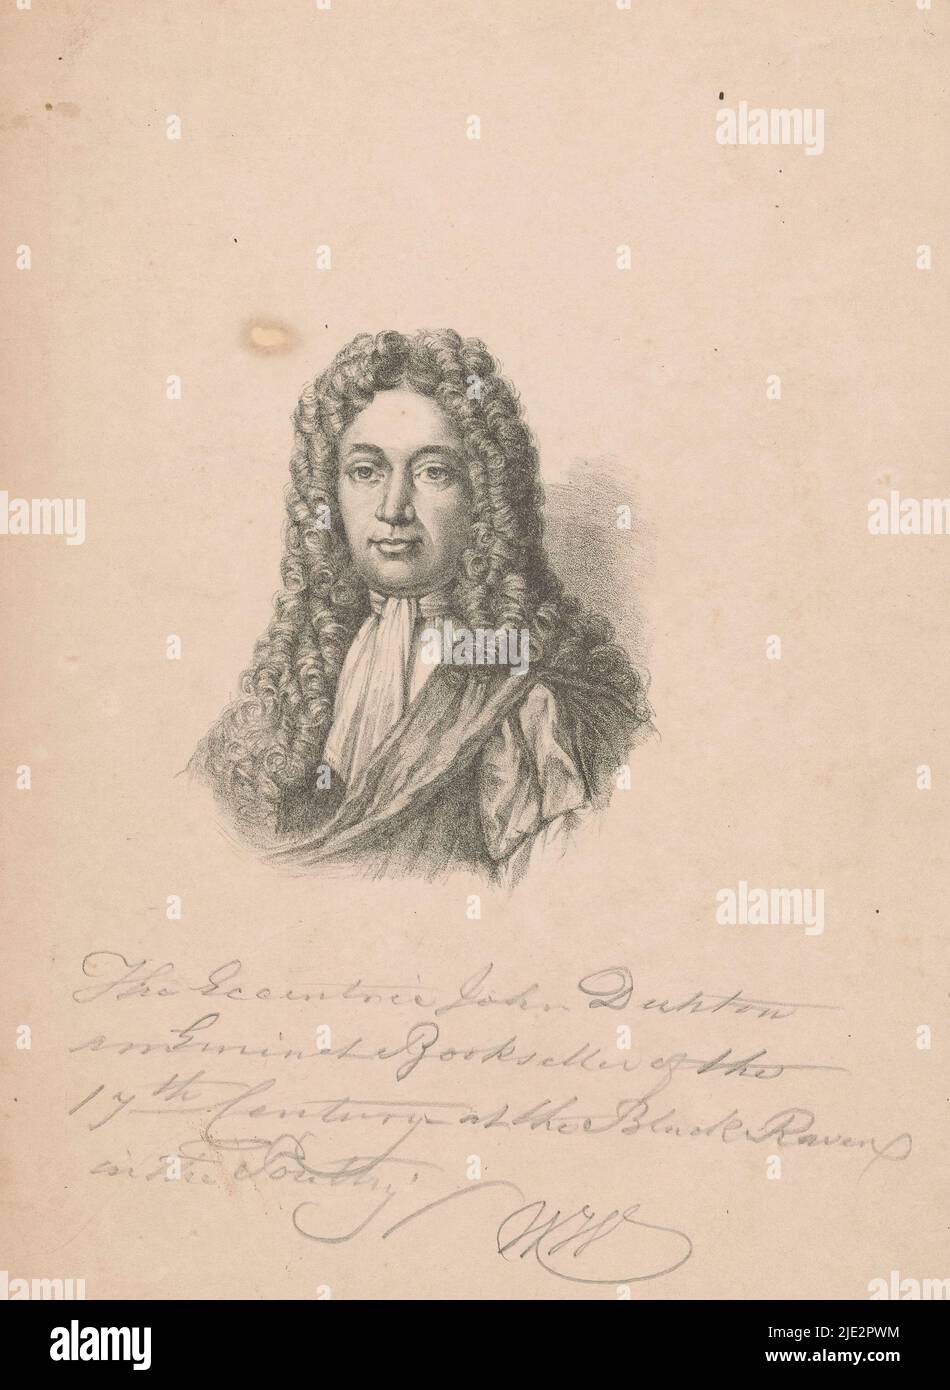 Portrait de John Dunton, libraire à Londres, imprimeur: Anonyme, c. 1825 - c. 1900, papier, hauteur 226 mm × largeur 164 mm Banque D'Images